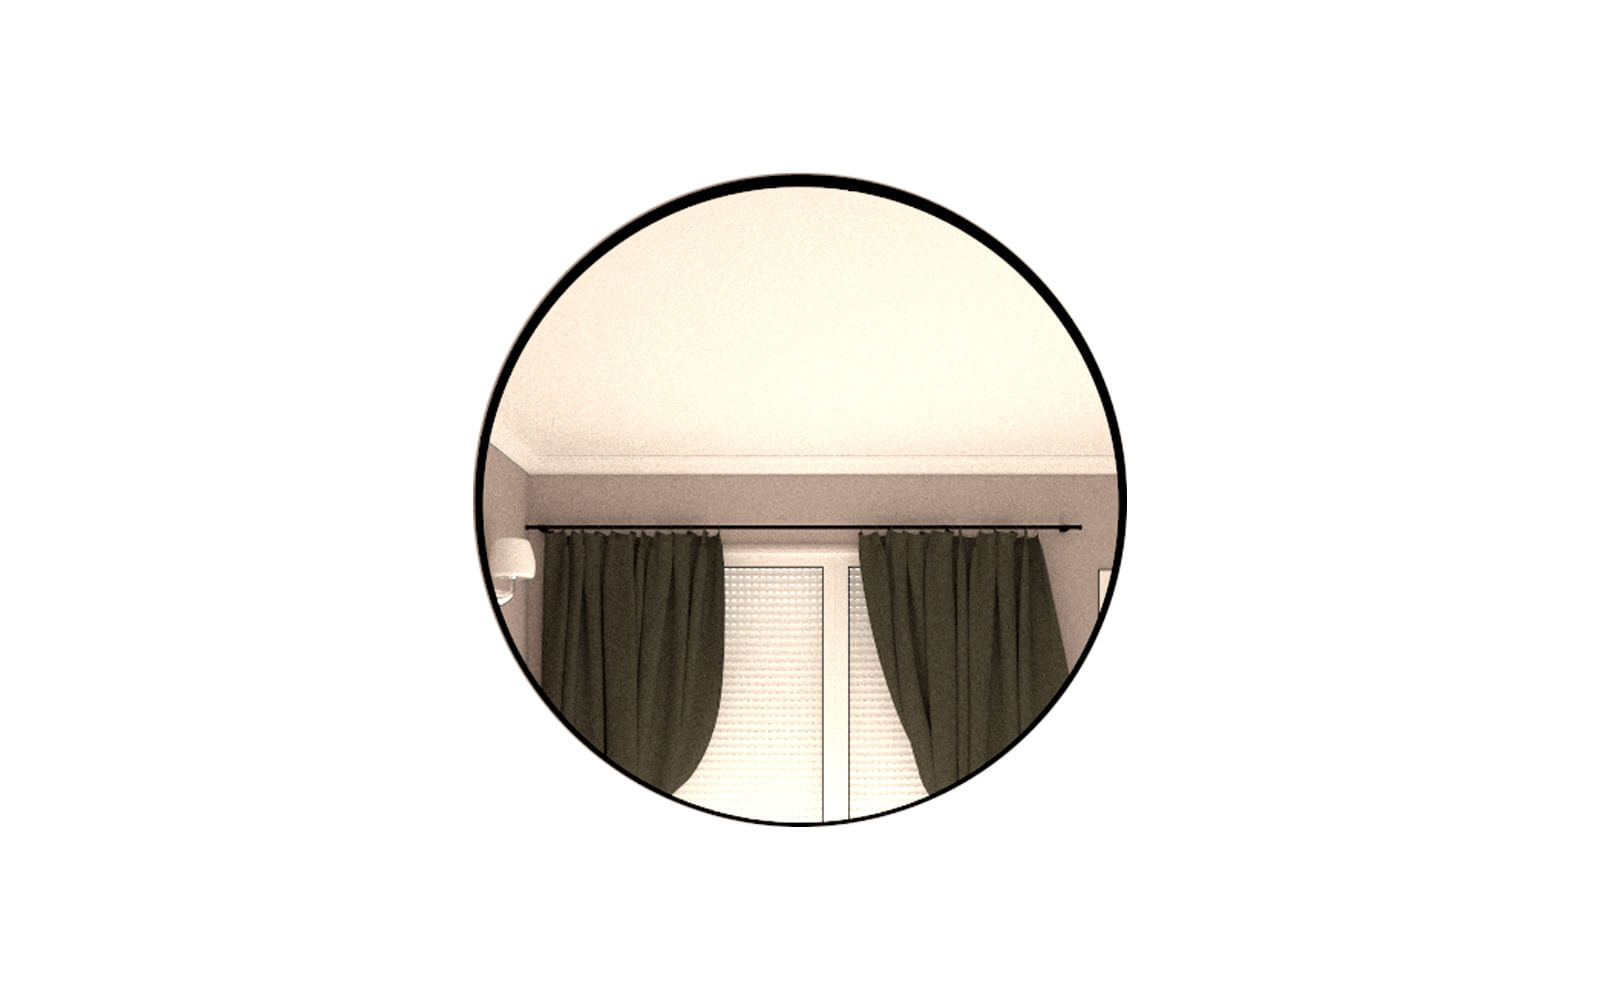 Espejos para el hogar, Espejo redondo Negro - 80x80